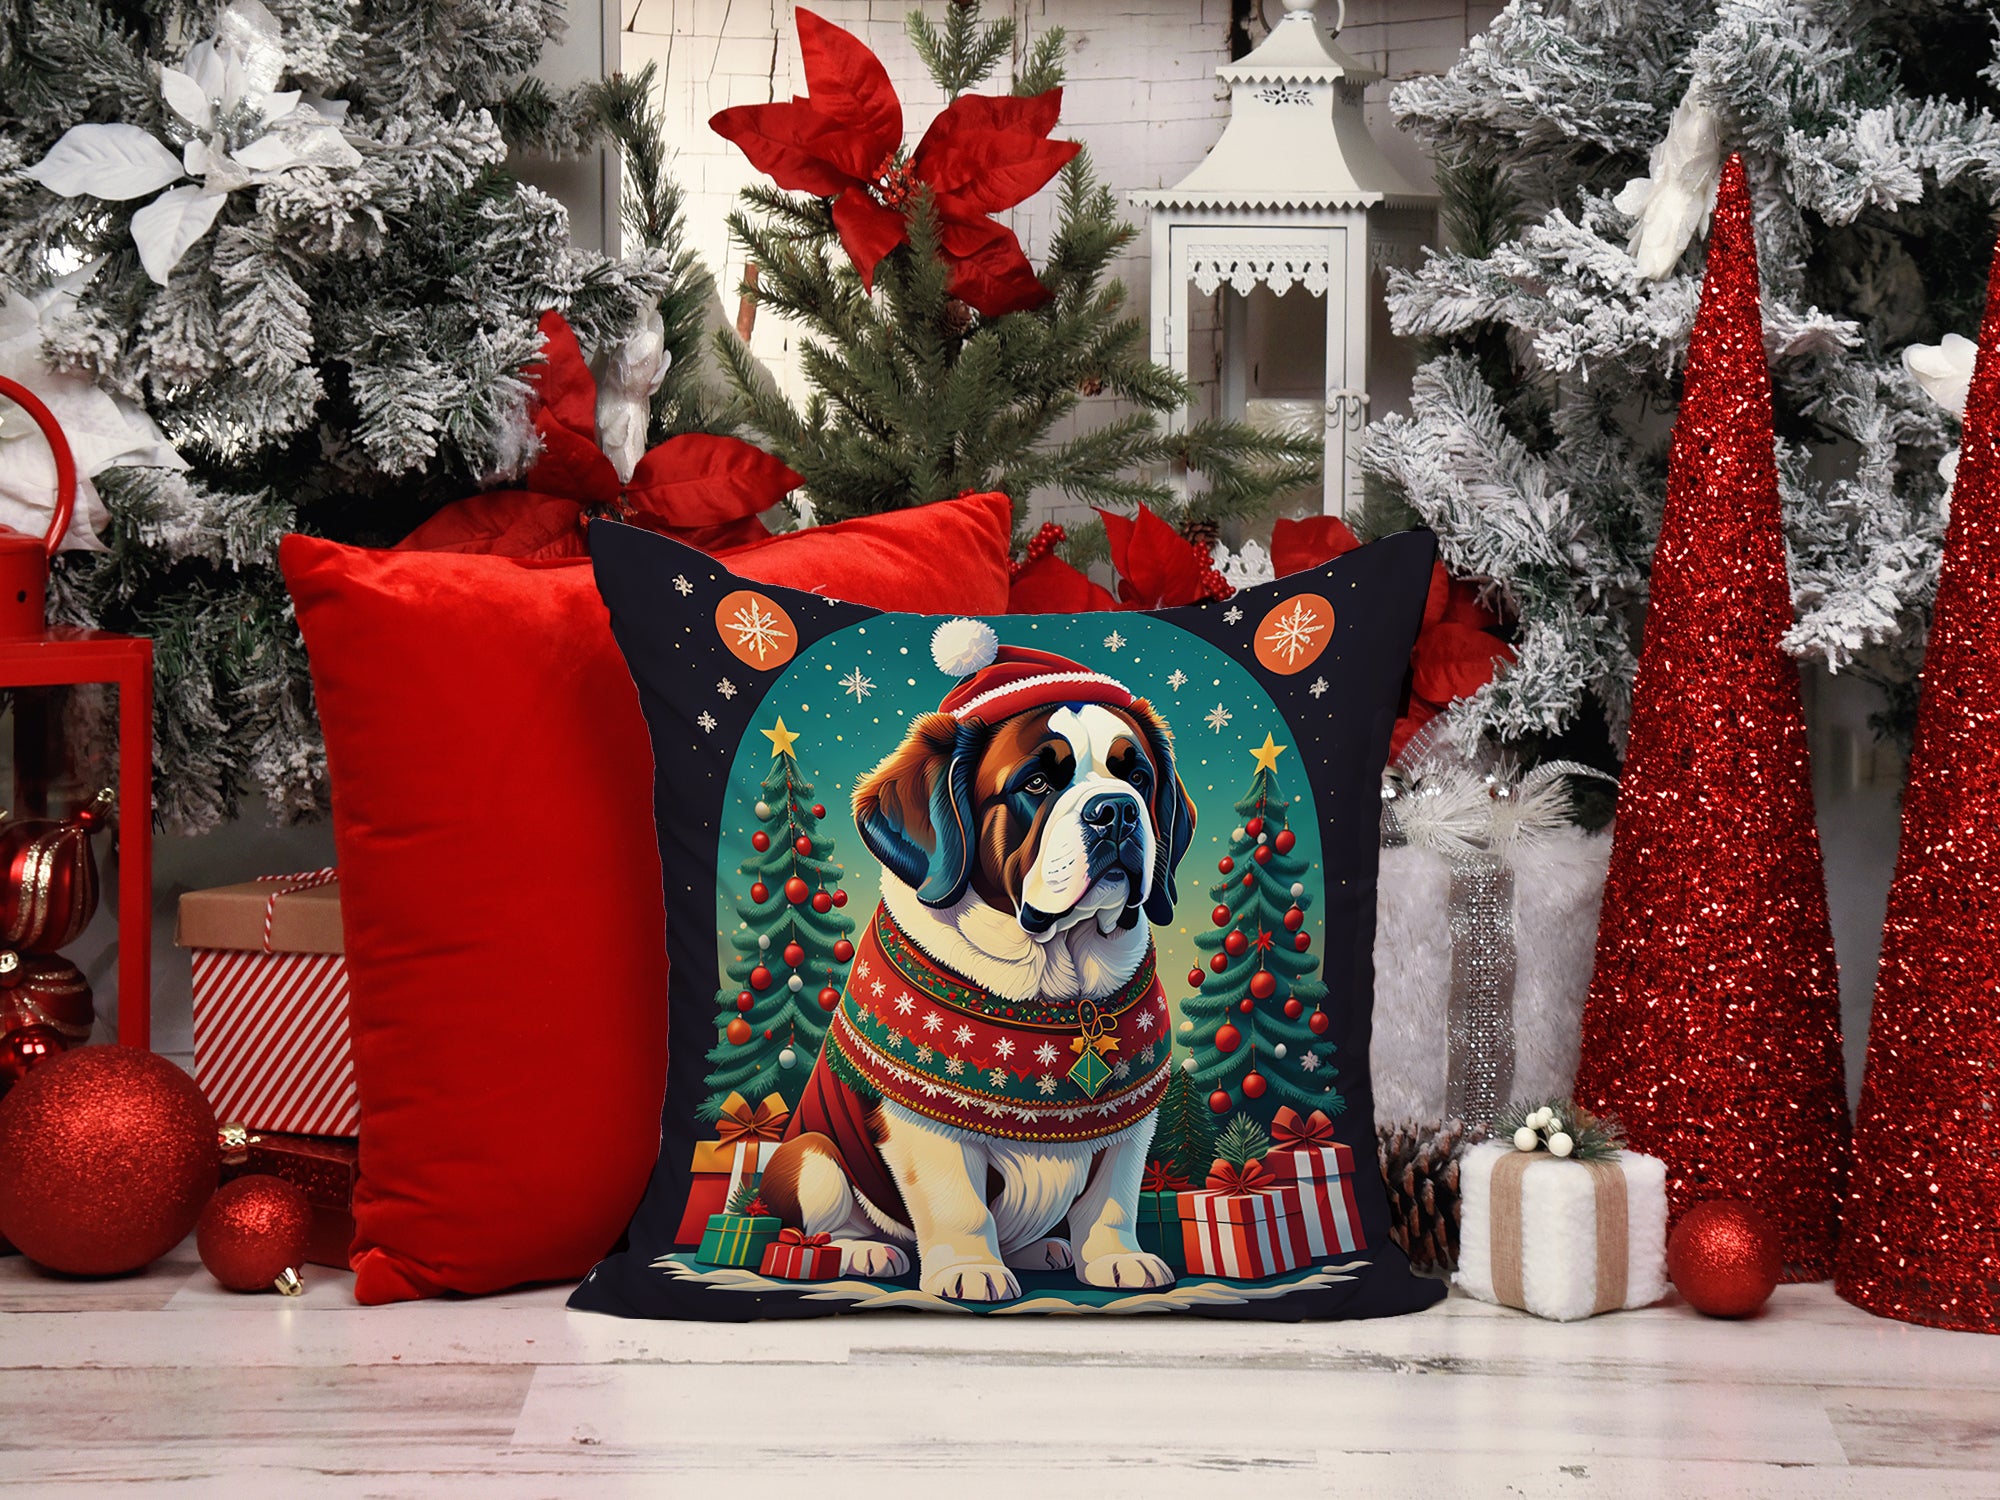 Buy this Saint Bernard Christmas Fabric Decorative Pillow